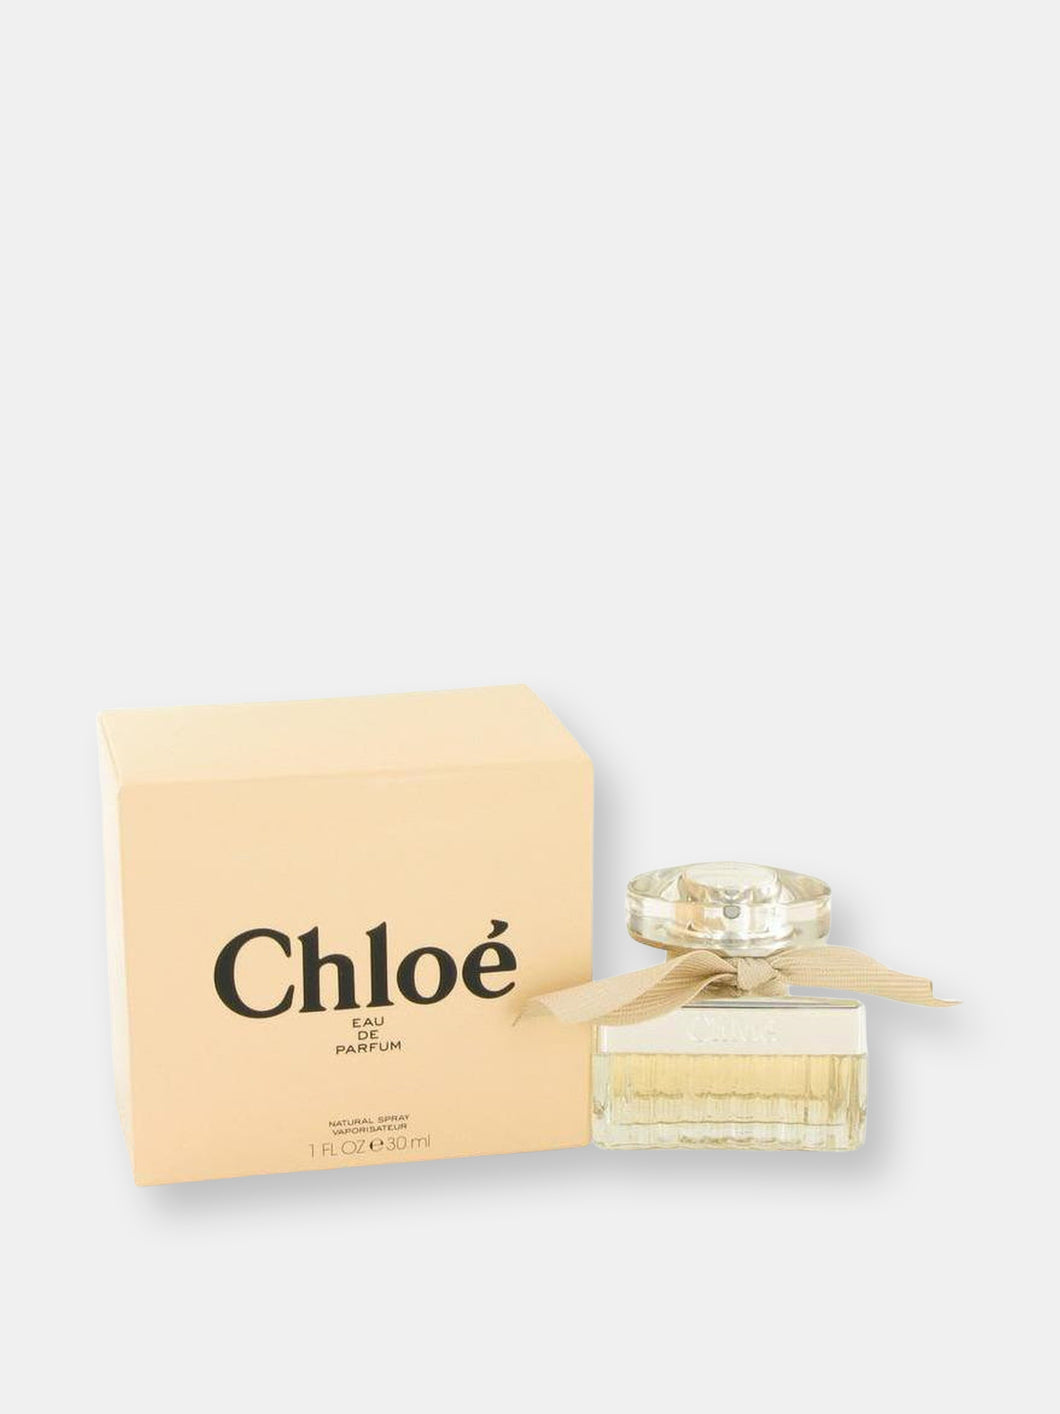 Chloe (New) by Chloe Eau De Parfum Spray 1 oz